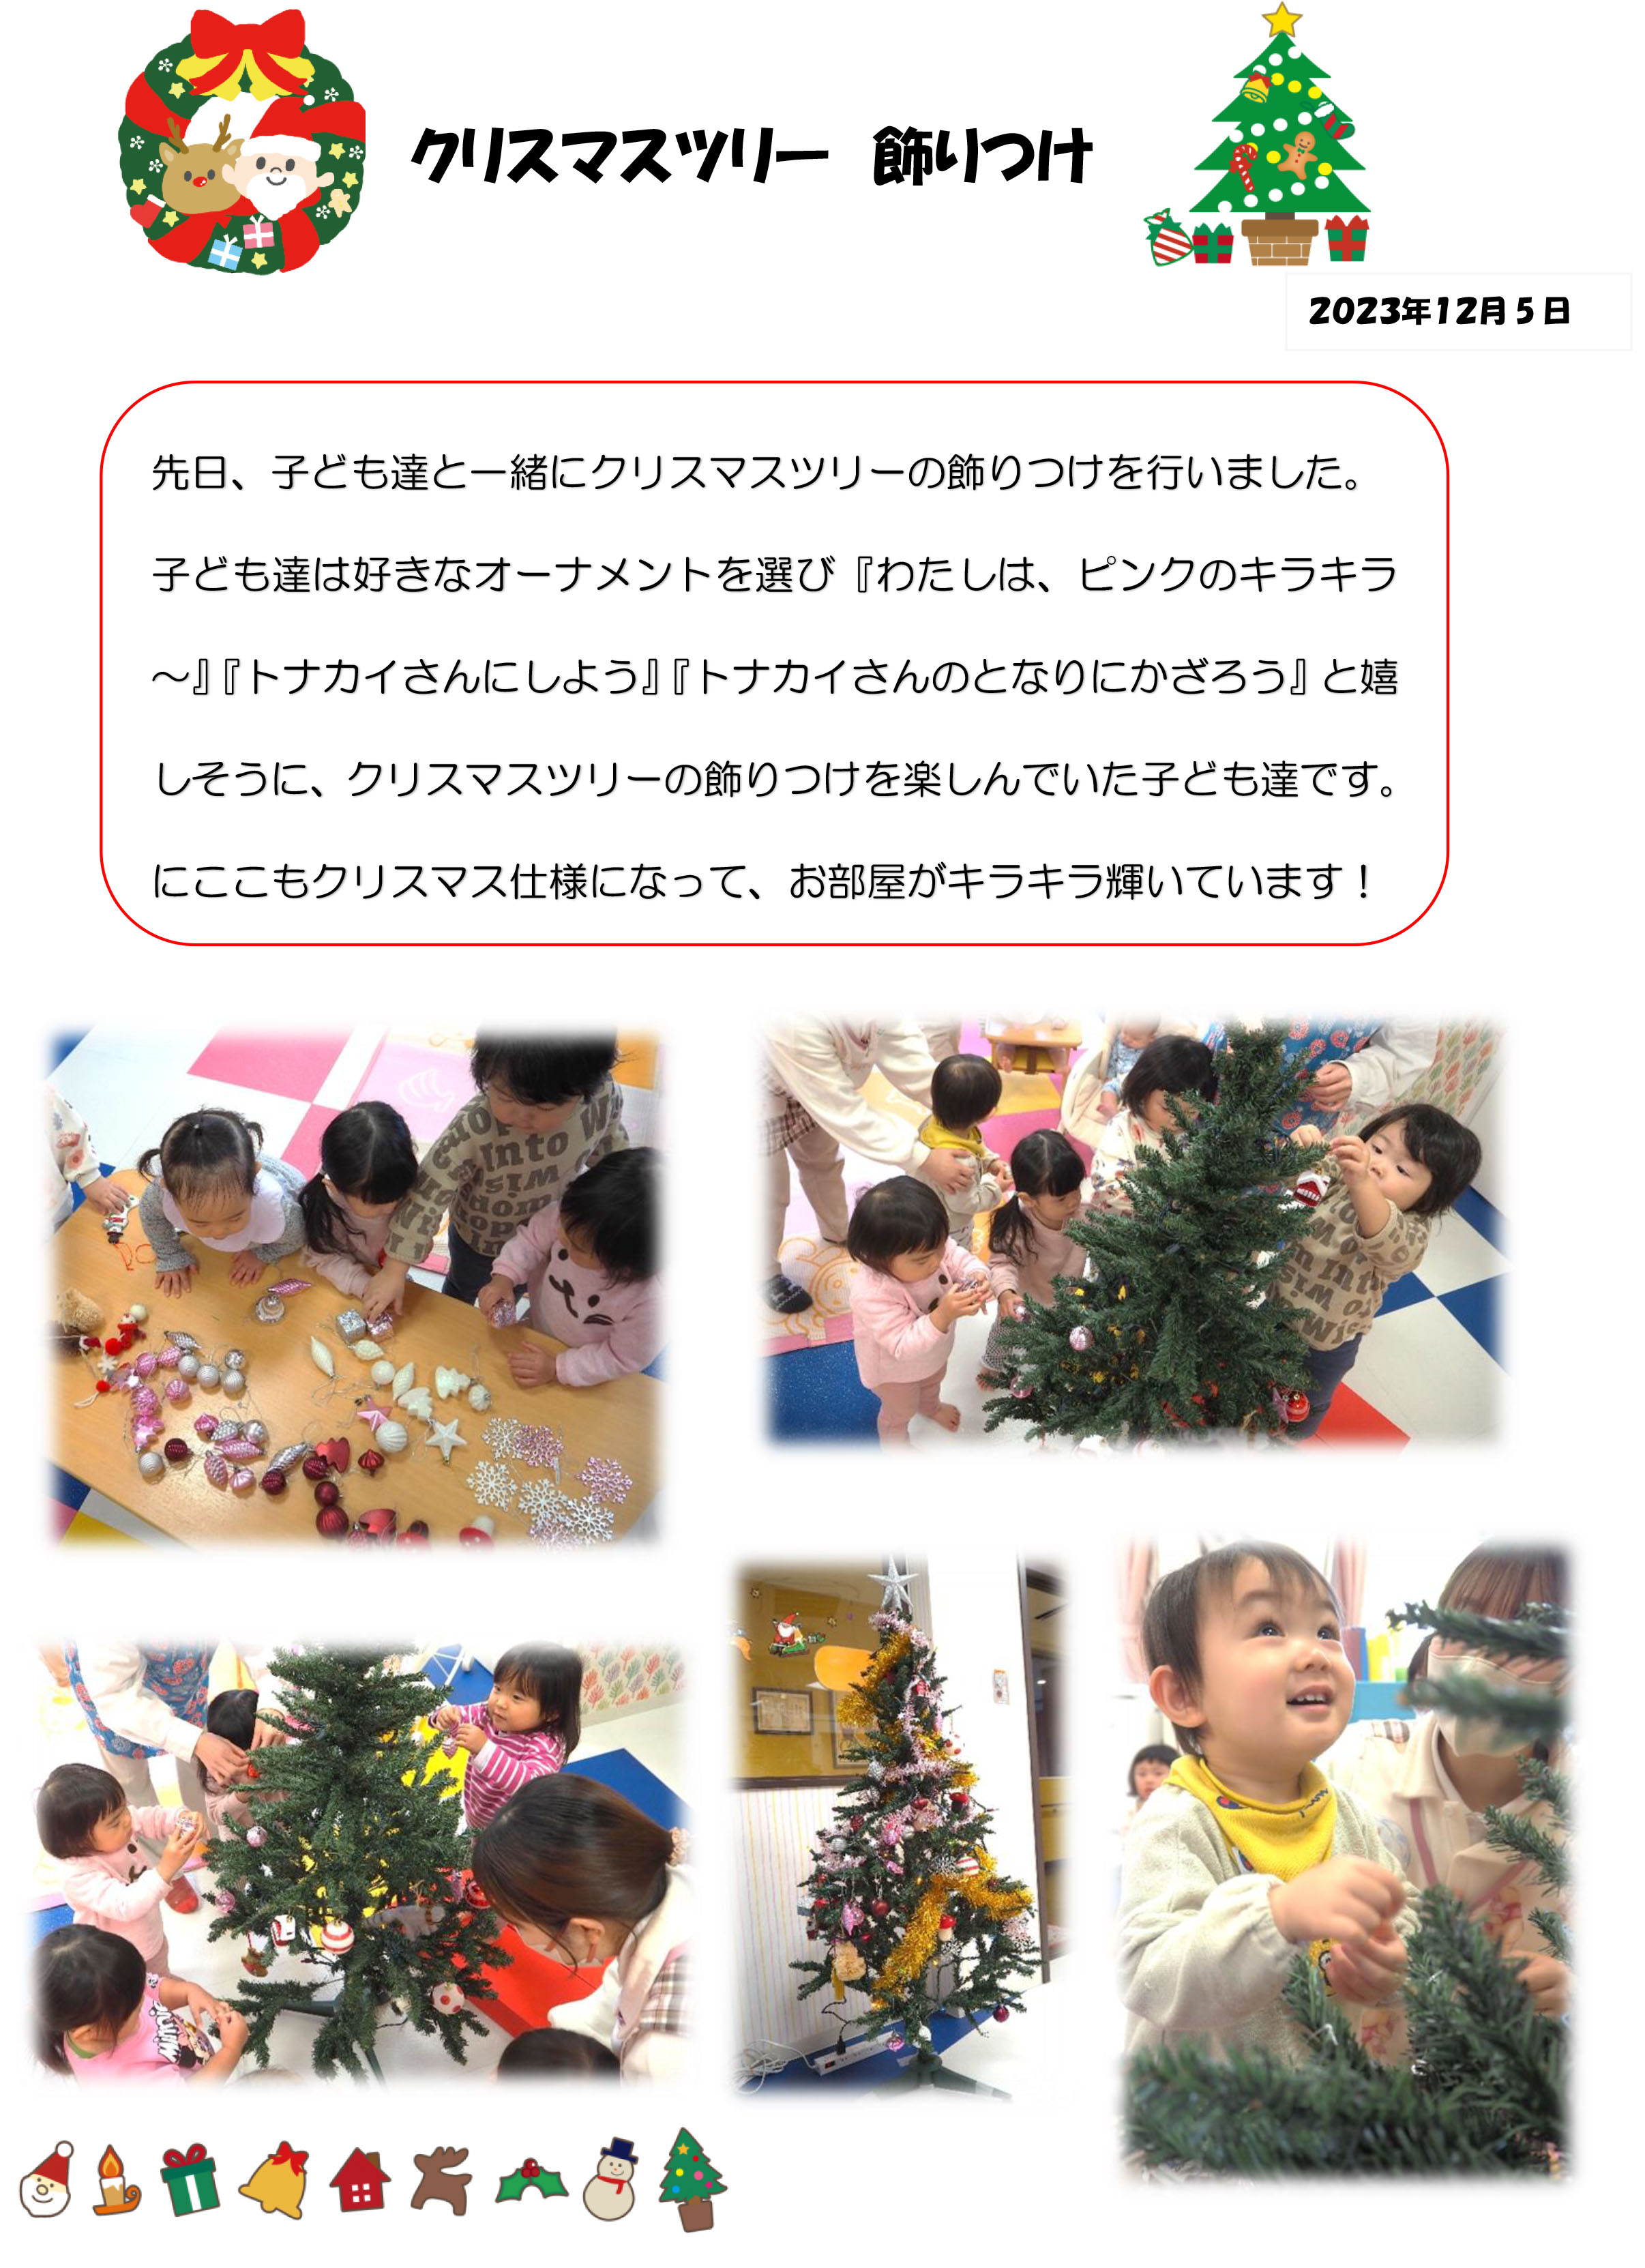 栃木県宇都宮市-小規模保育園-クリスマスツリー飾りつけ